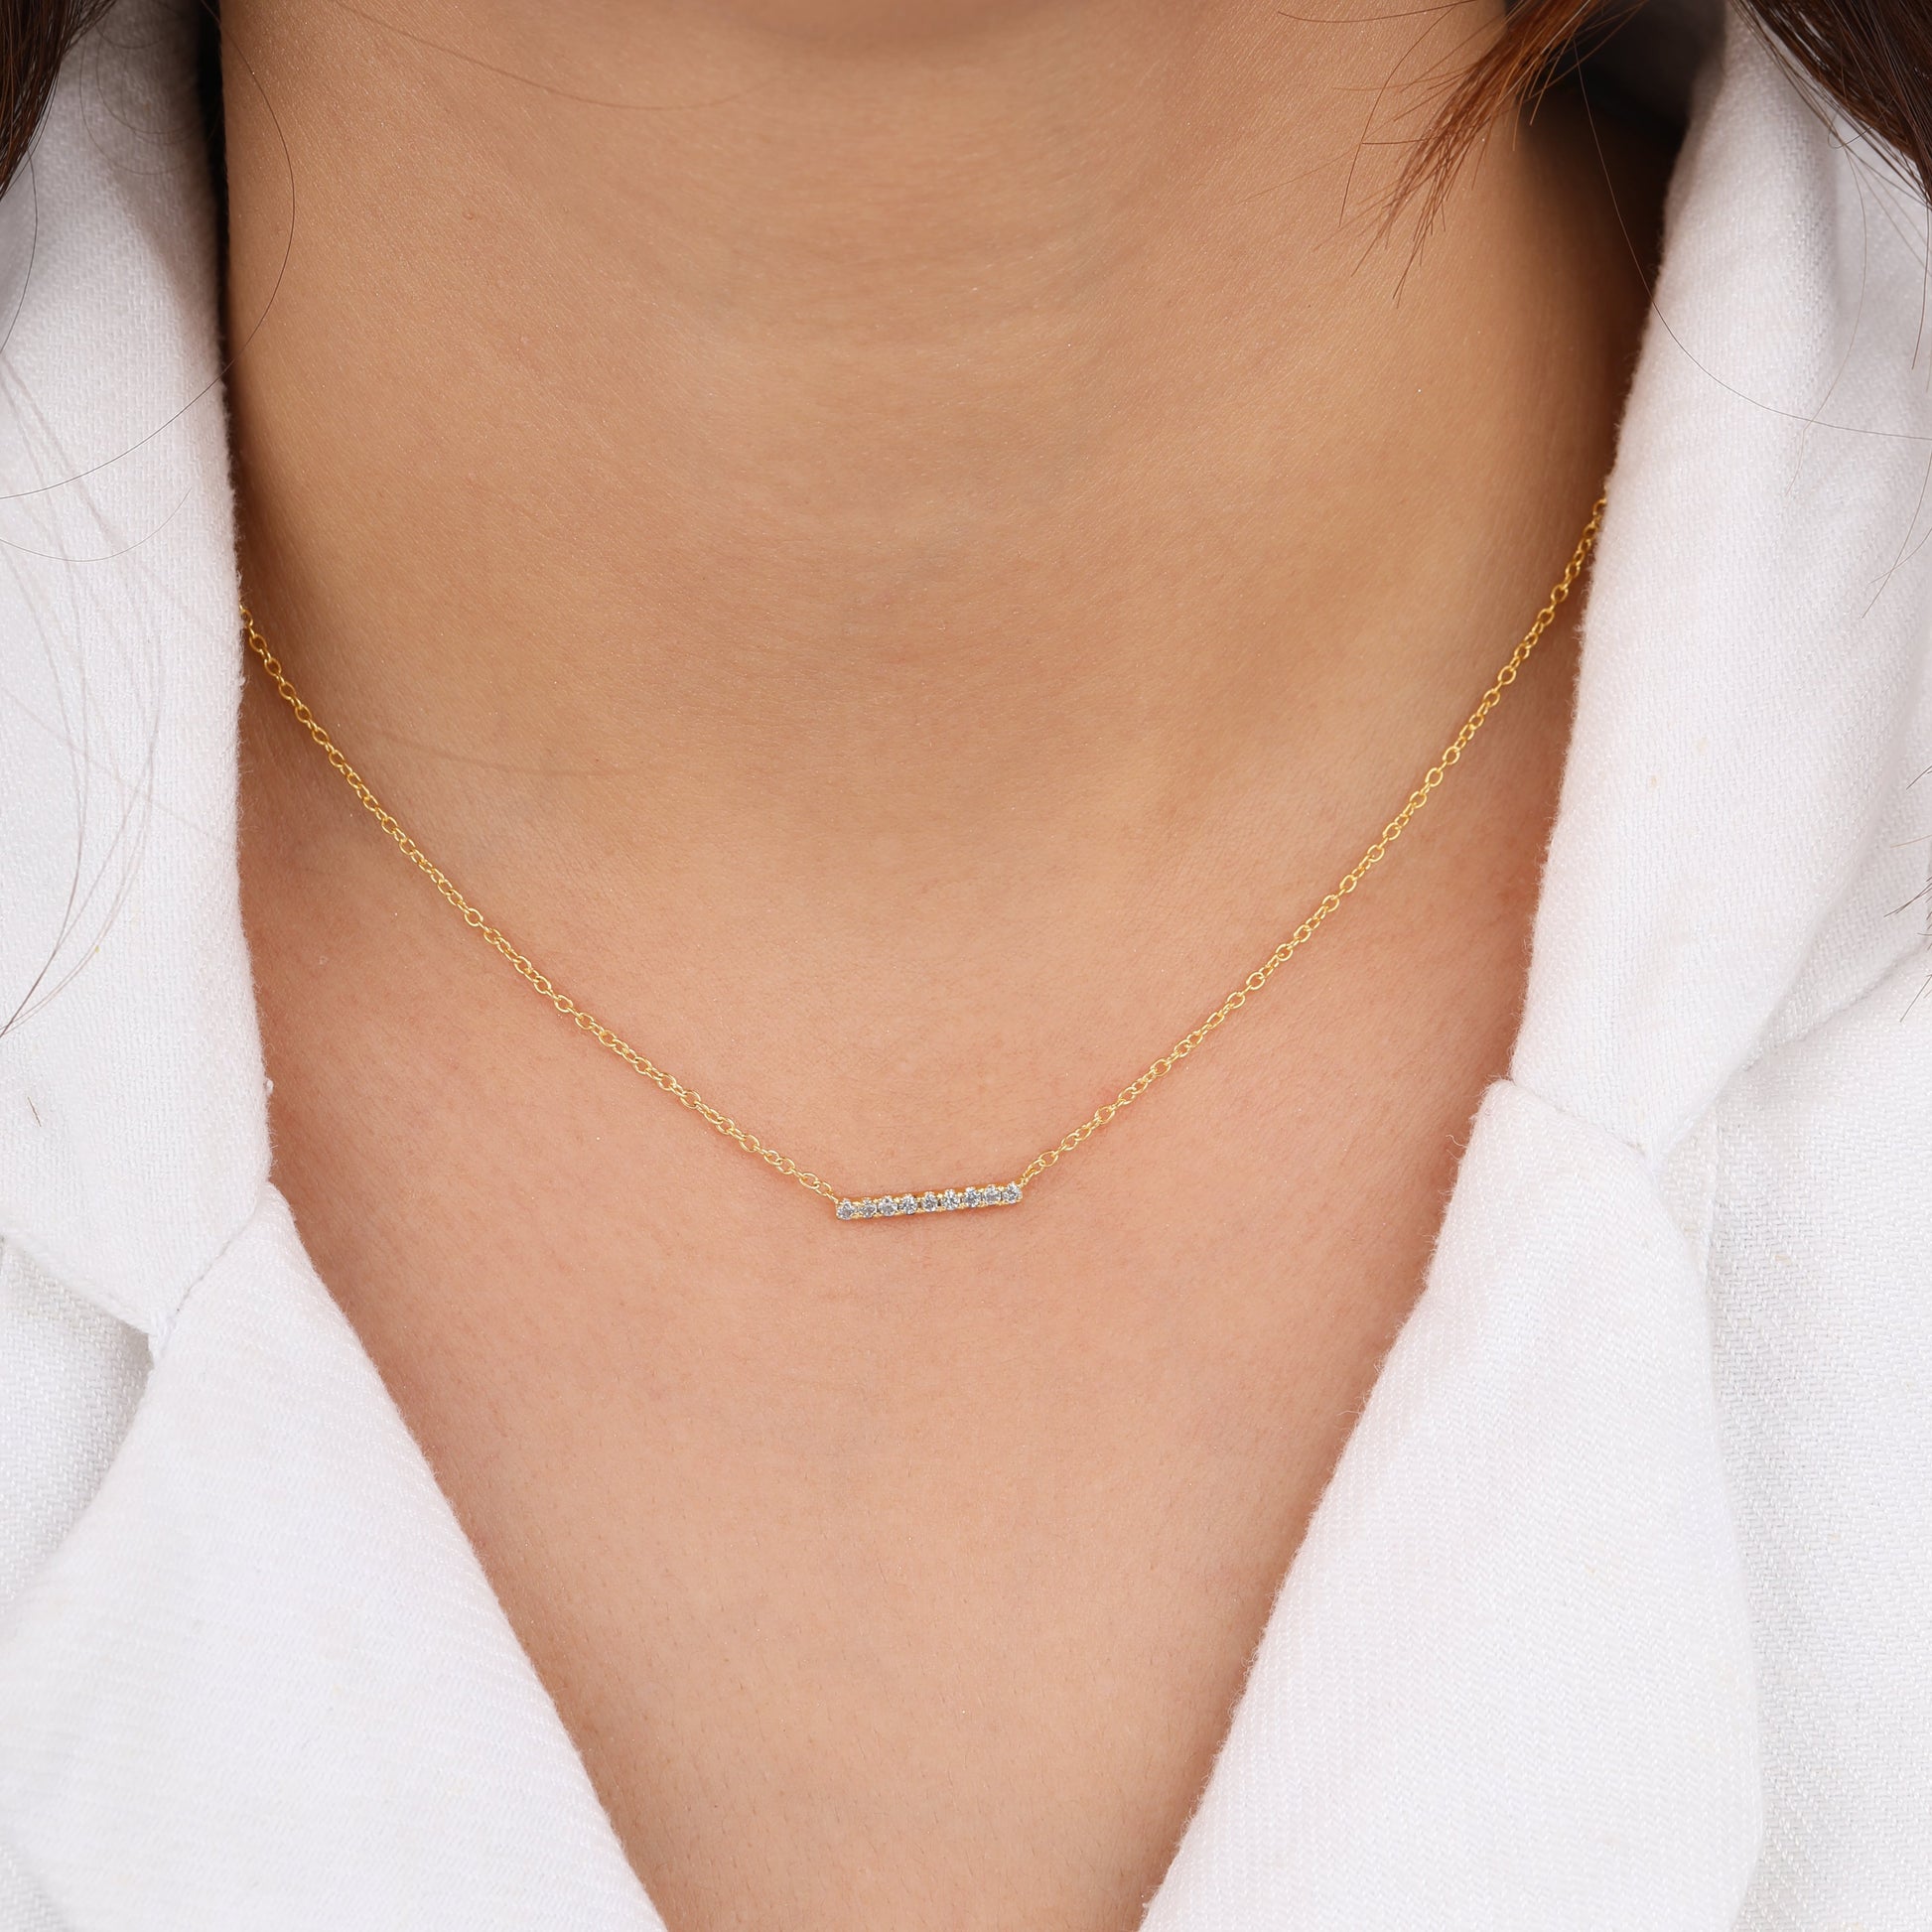 Dainty Diamond Bar Necklace on model neck